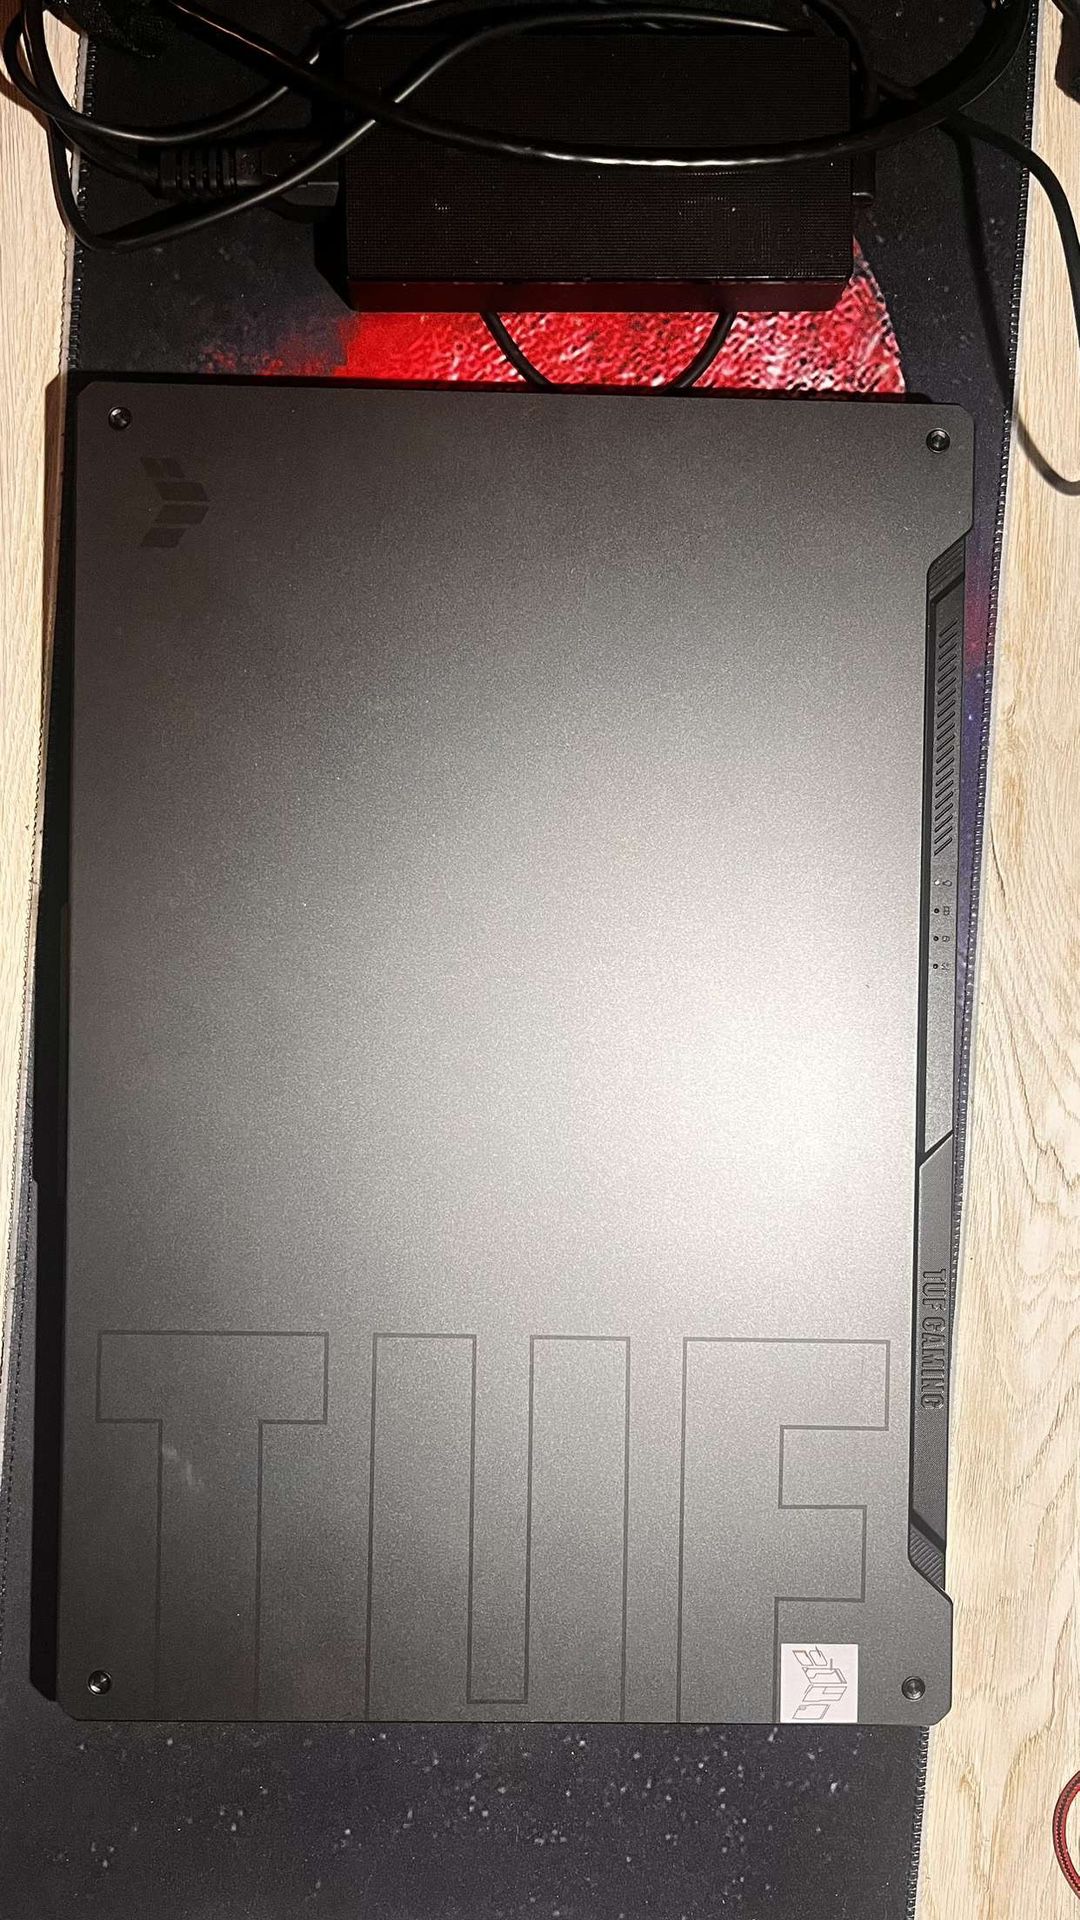 Tuf Gaming Laptop